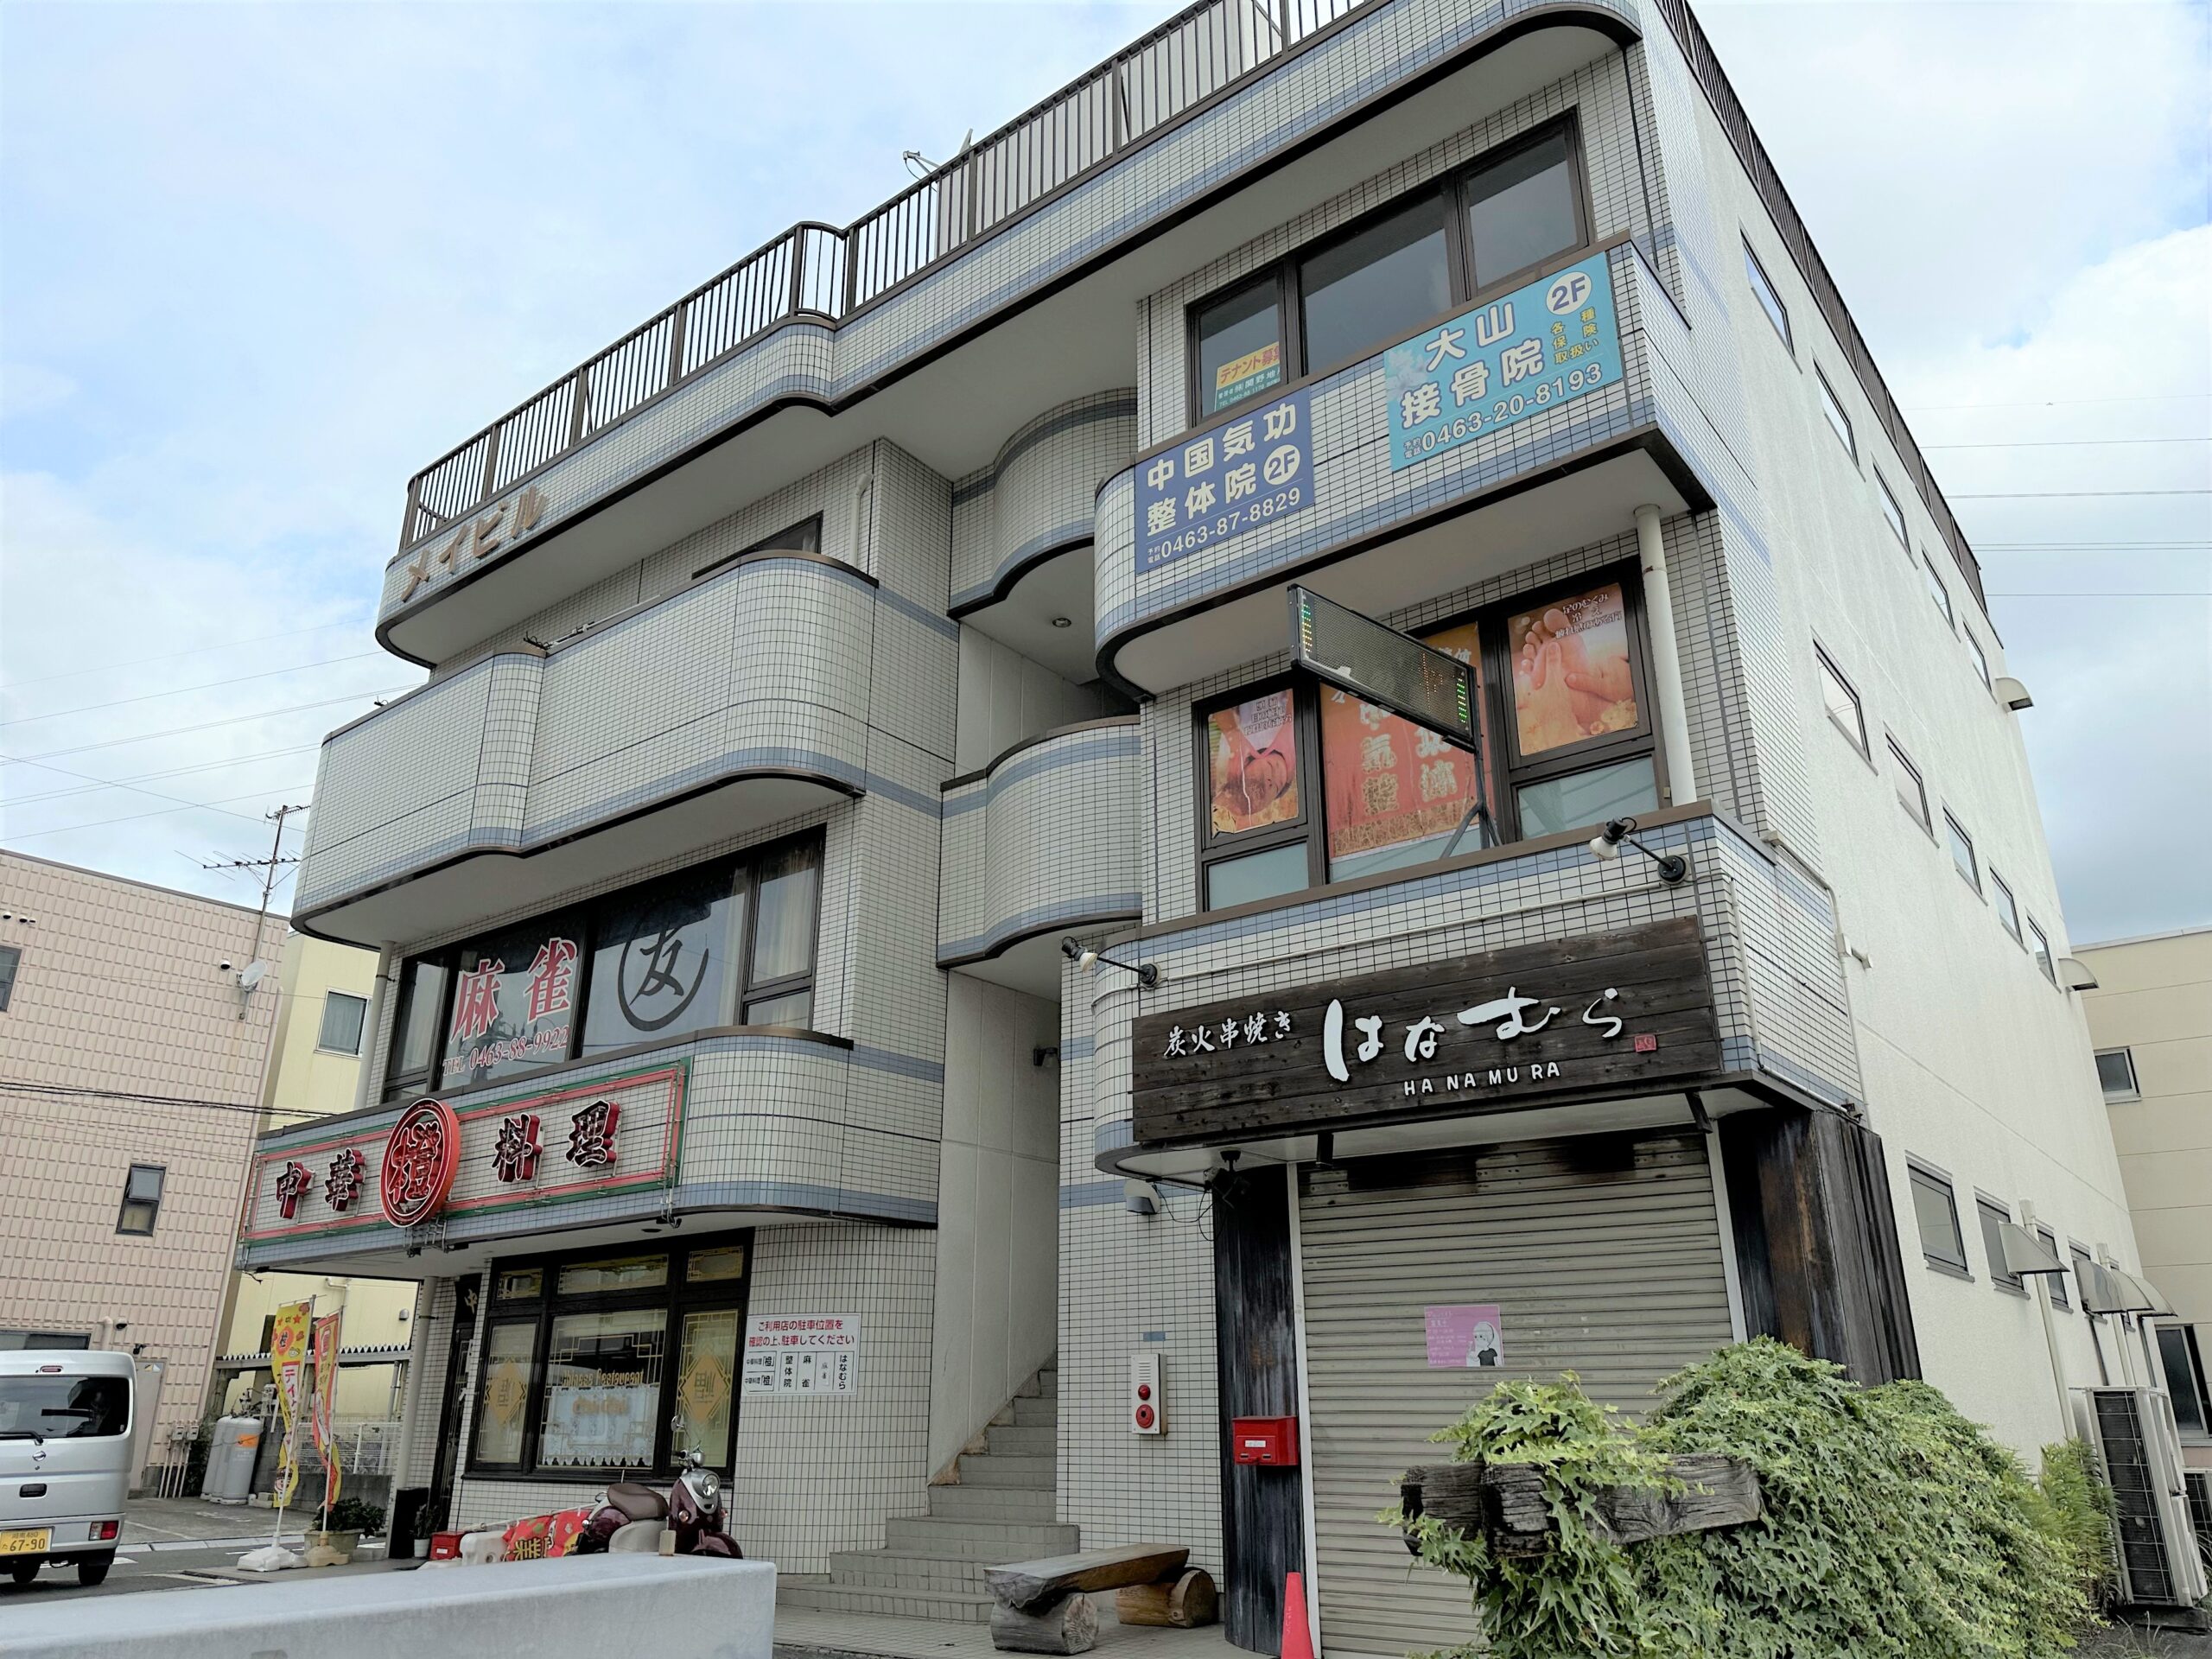 ■メイビル　駅近テナント（17.50坪）　　　　　　　　　　　　　　　　　　　　　　　　　　　　　　　　　　　　　渋沢駅北口から徒歩2分の好立地　飲食店可